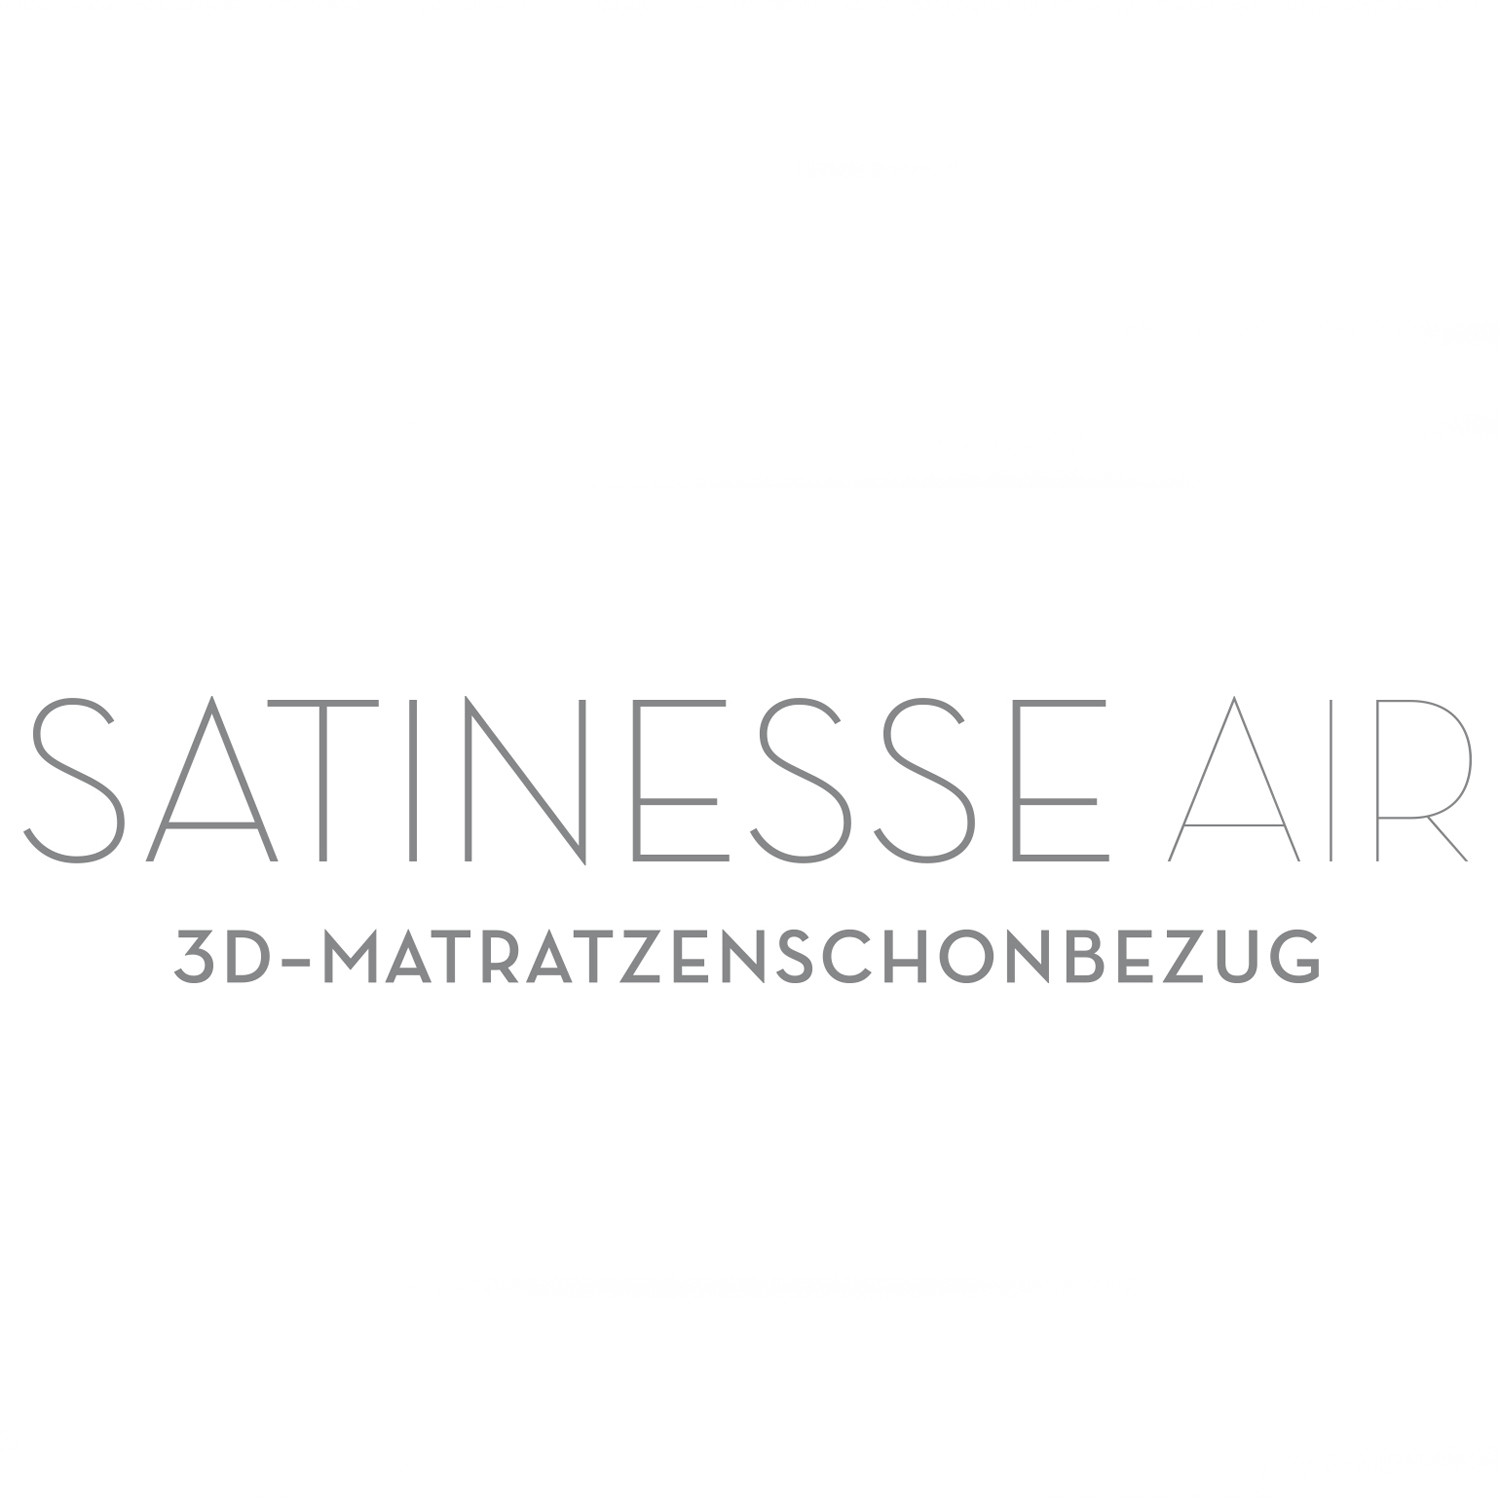 FORMESSE Matratzenschoner Satinesse Air Silver wollweiß 180x200cm